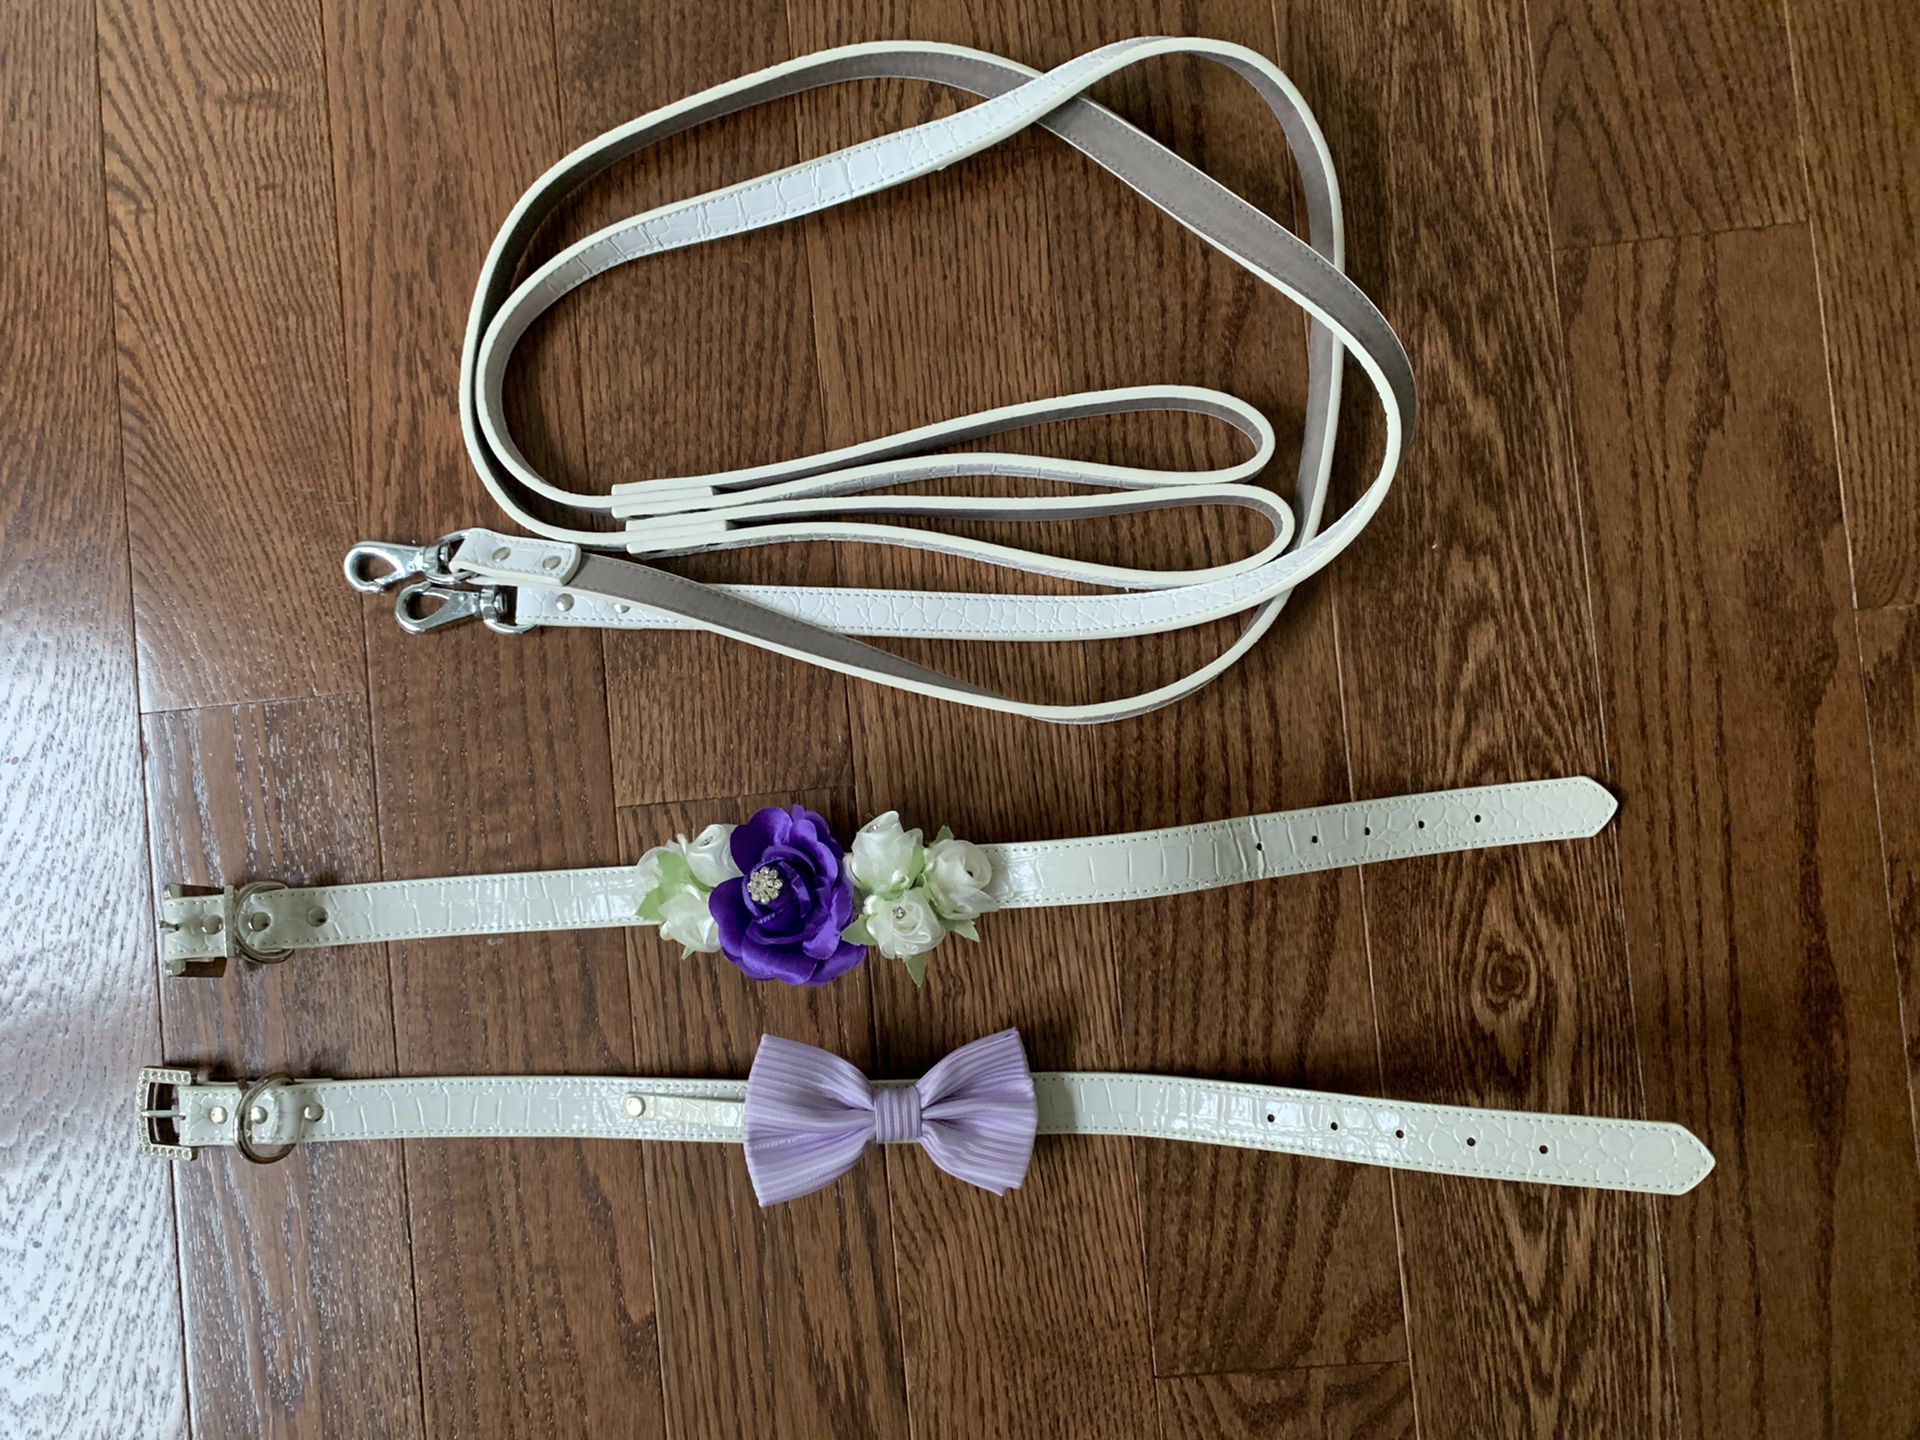 Dog collar and leash wedding set